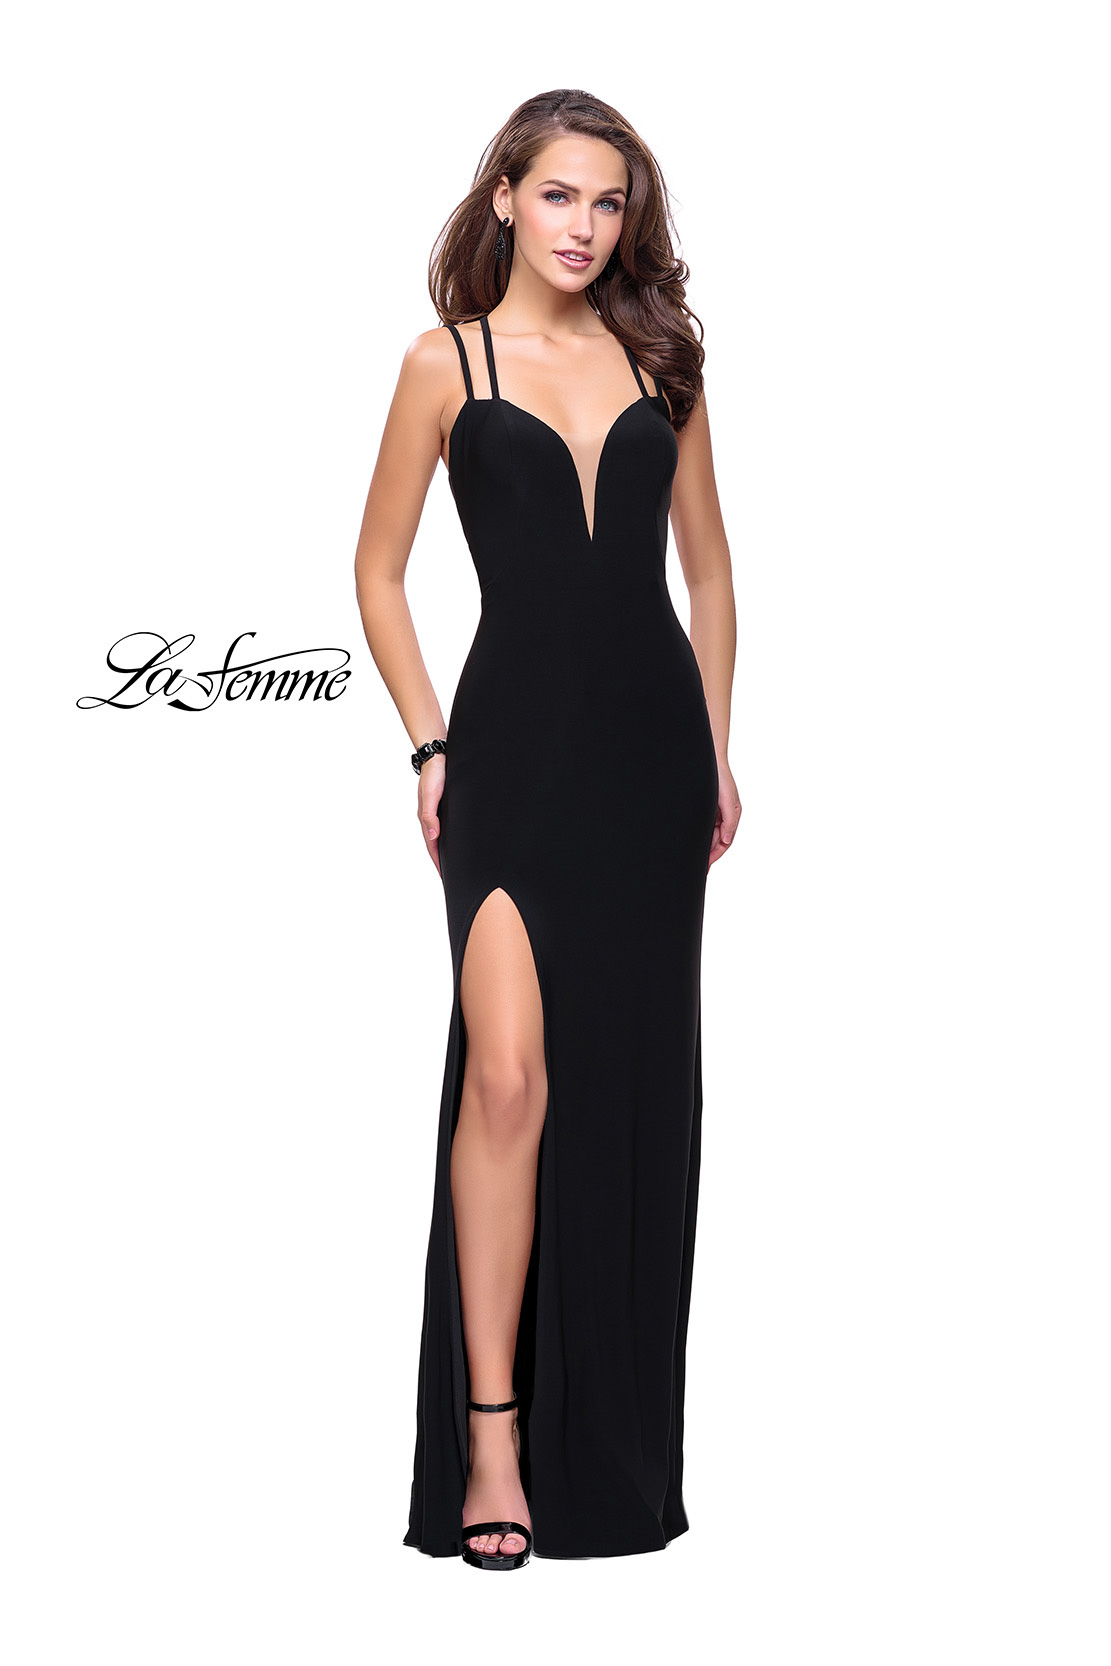 classic black prom dress